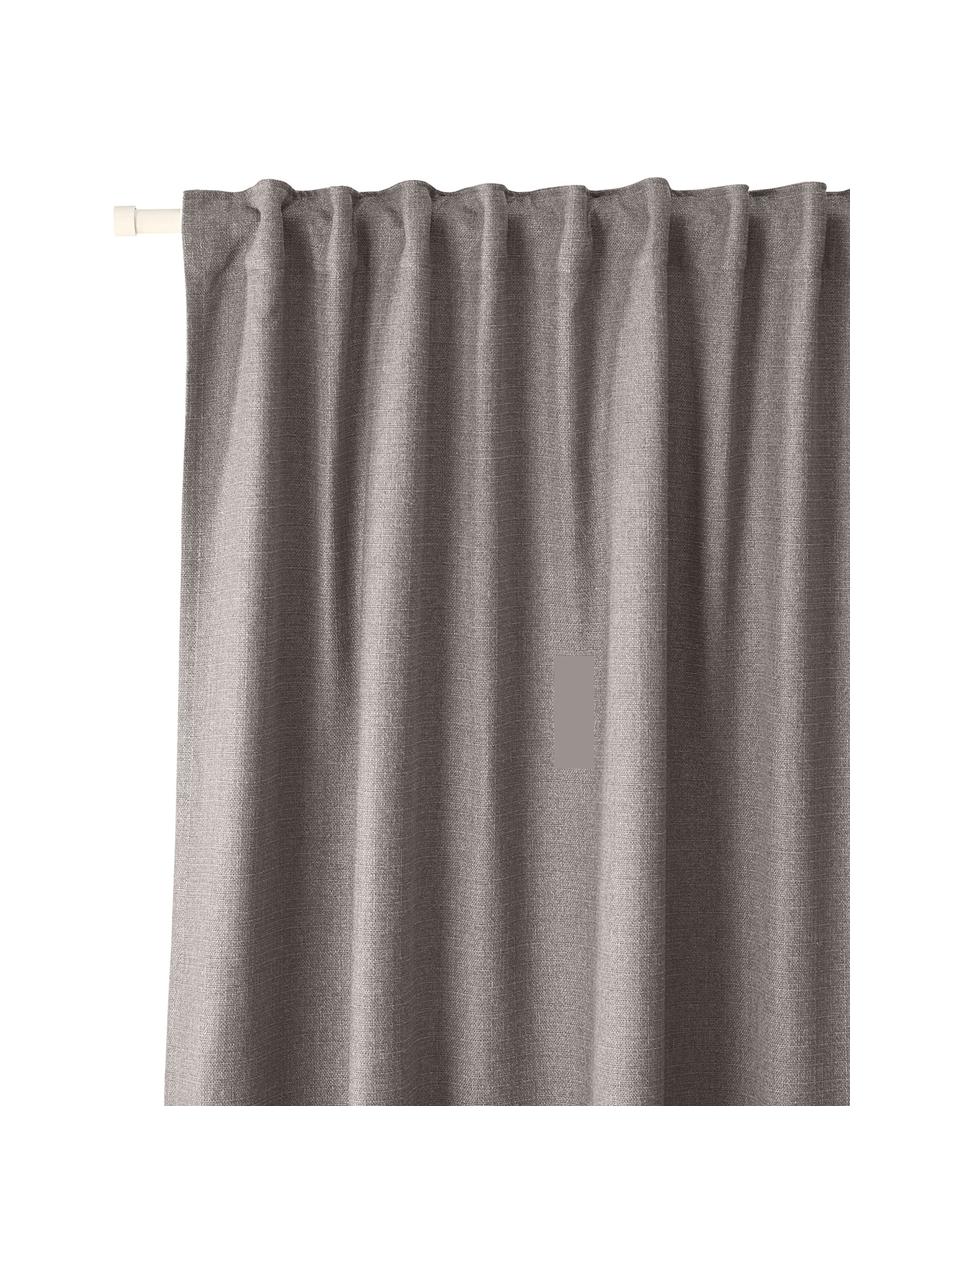 Ondoorzichtige gordijn Jensen in grijs met multiband, 2 stuks, 95% polyester, 5% nylon, Grijs, B 130 x L 260 cm